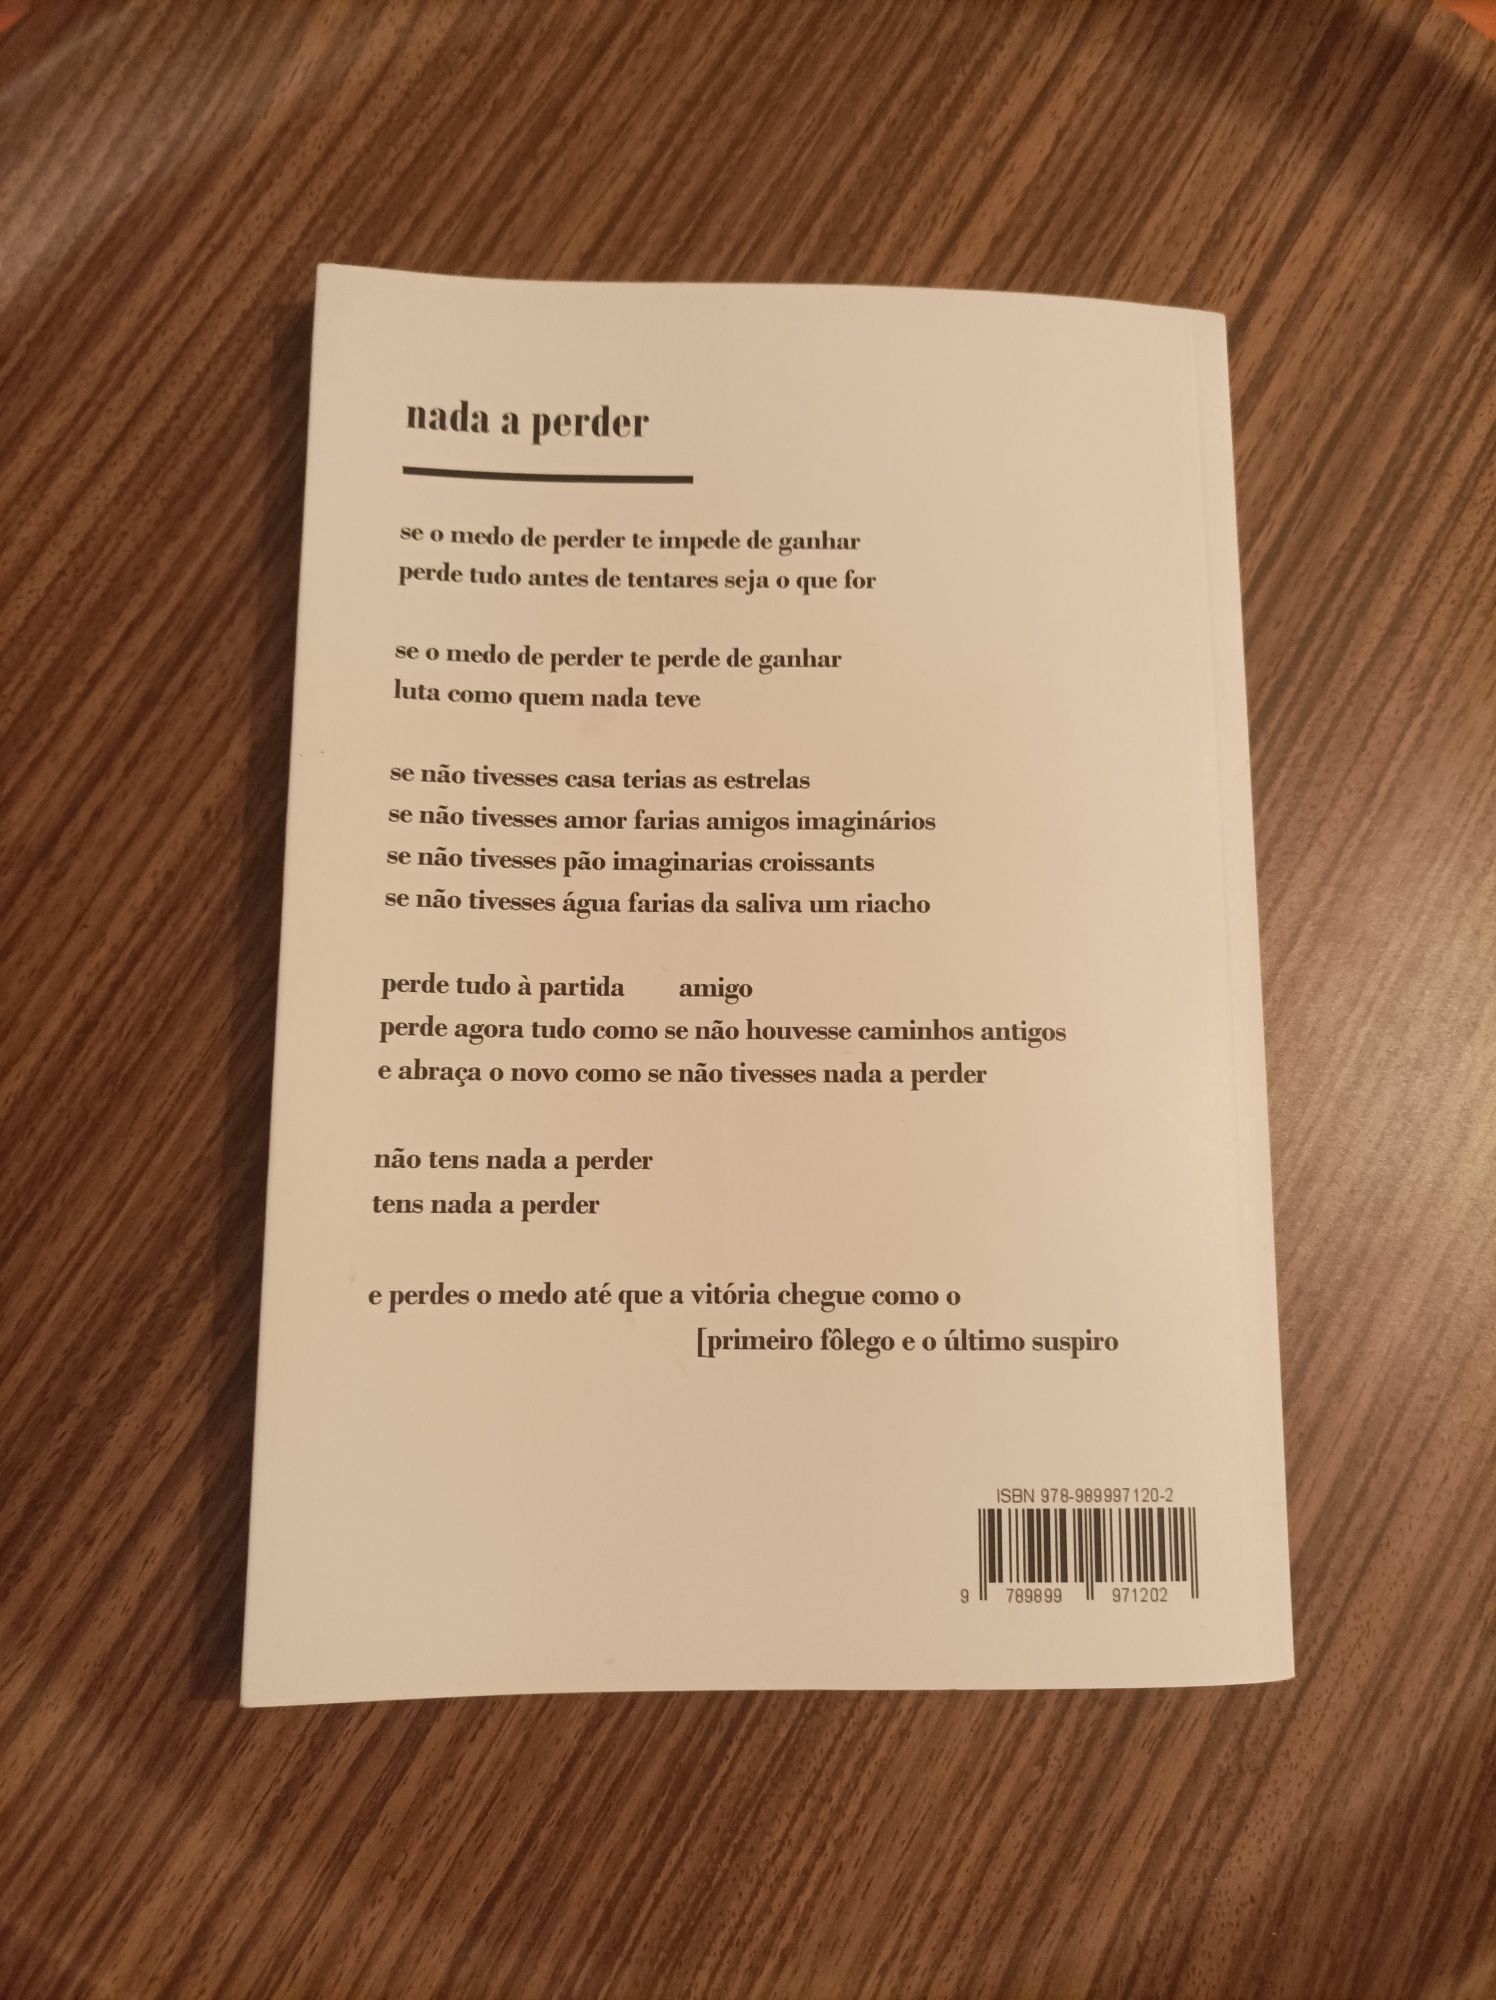 Livro "Vai mudar a tua vida" de João Negreiros